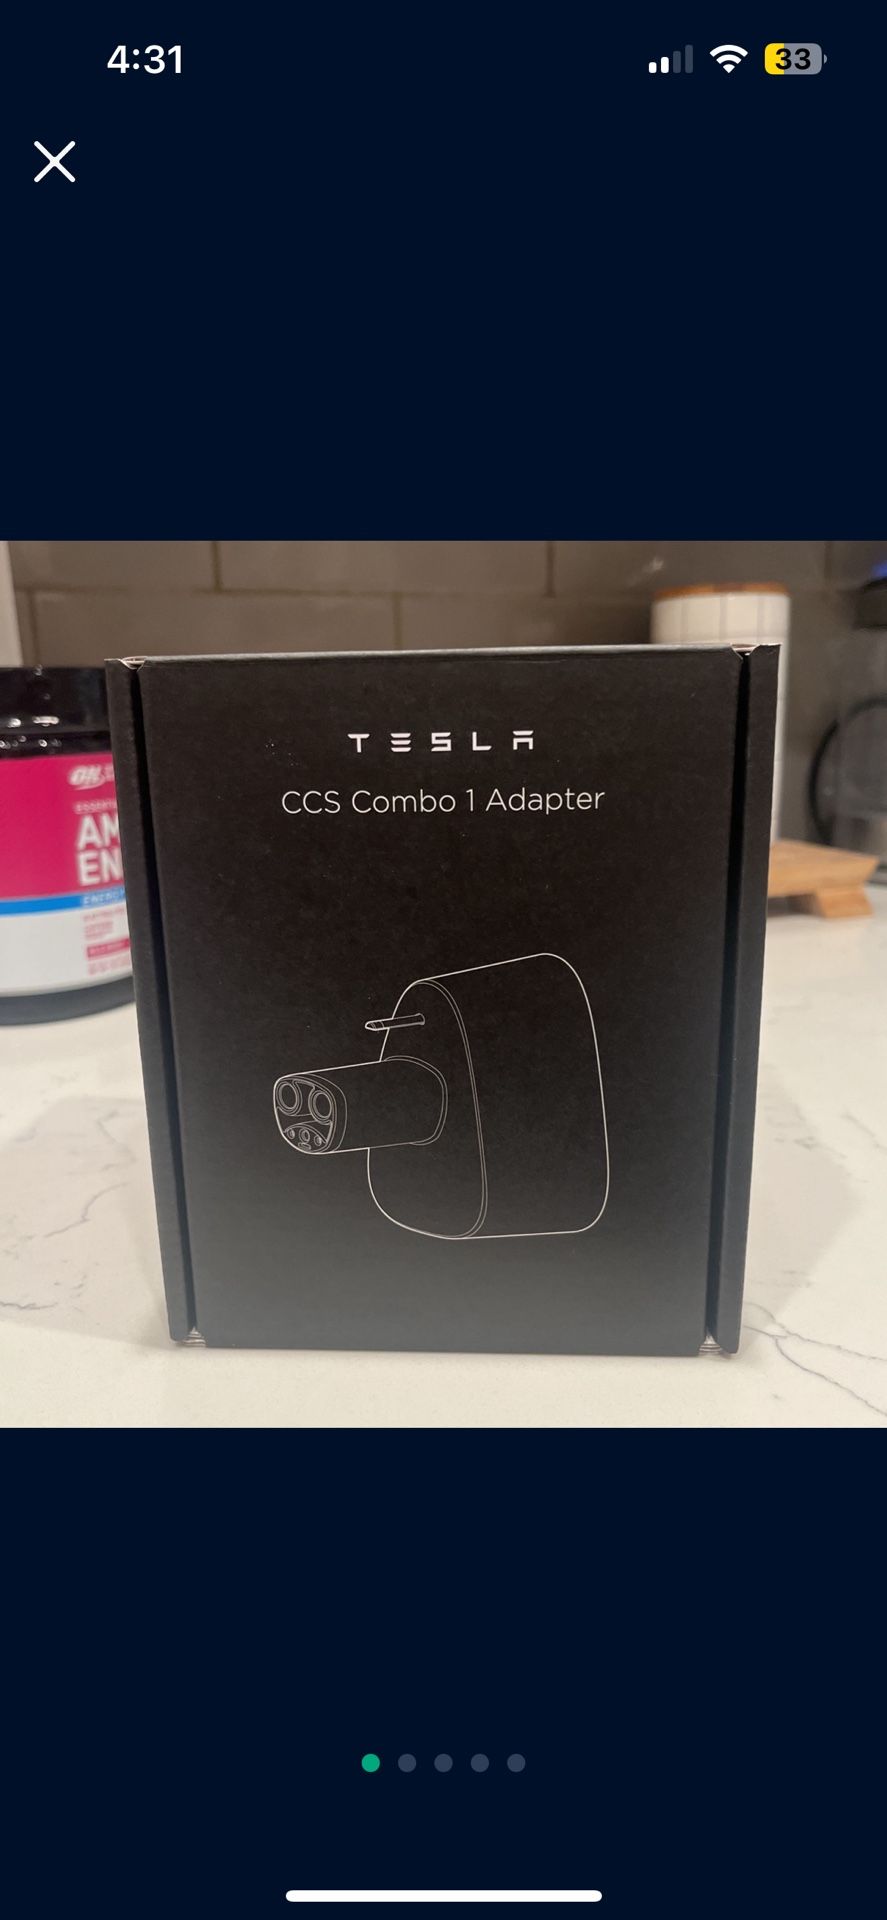 Tesla CCS Combo 1 Adapter 